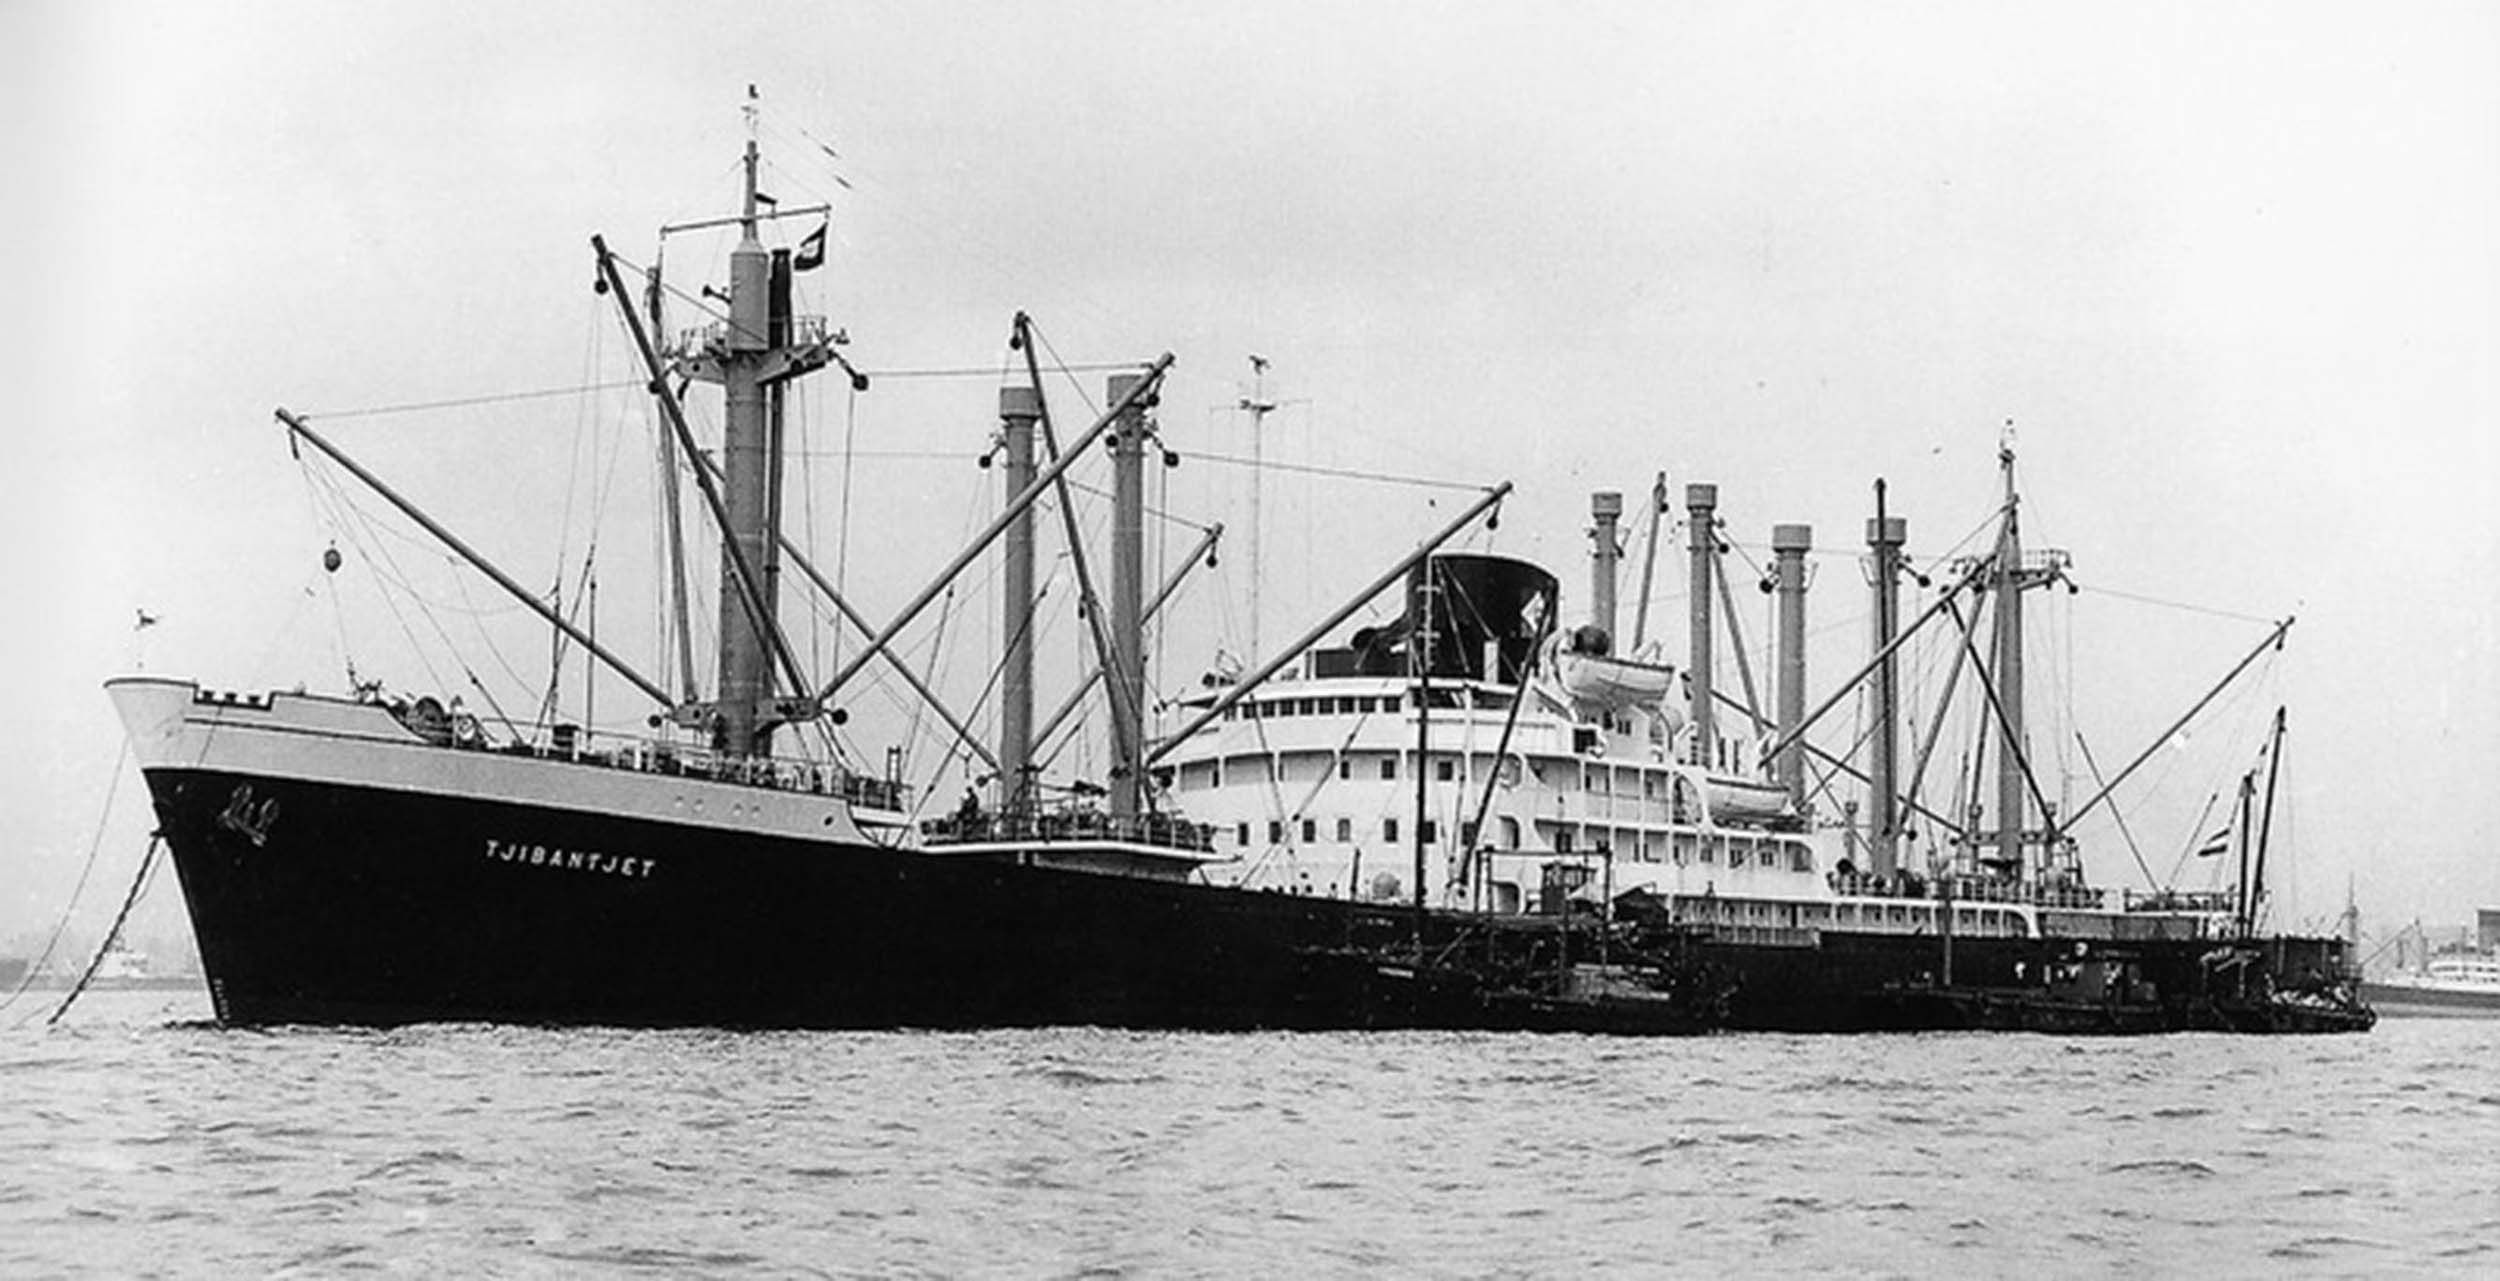 Kapal MV Tjibantjet saat di Hong Kong tahun 1958, aneka foto kapal tersebut dikumpulkan dari sejumlah foto milik empat orang awaknya, Muck van der Kroft, John Papenhuyzen, Ad Rommen, dan Erik Moen. dok RJ Bersma